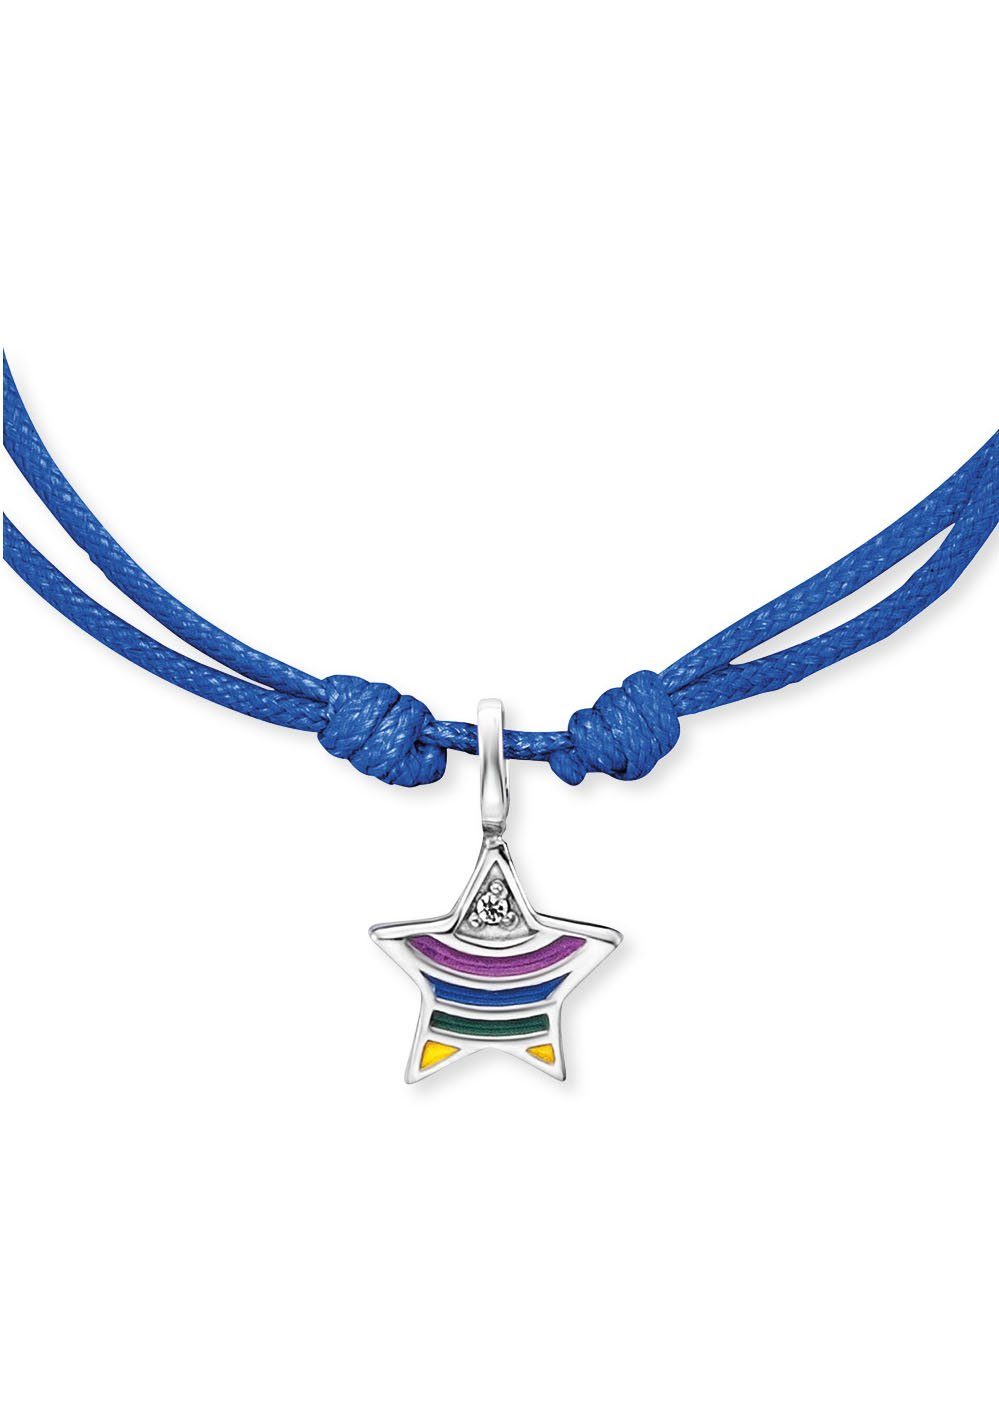 Herzengel Armband Stern HEB-STAR-RAINBOW, rainbow, mit Emaille